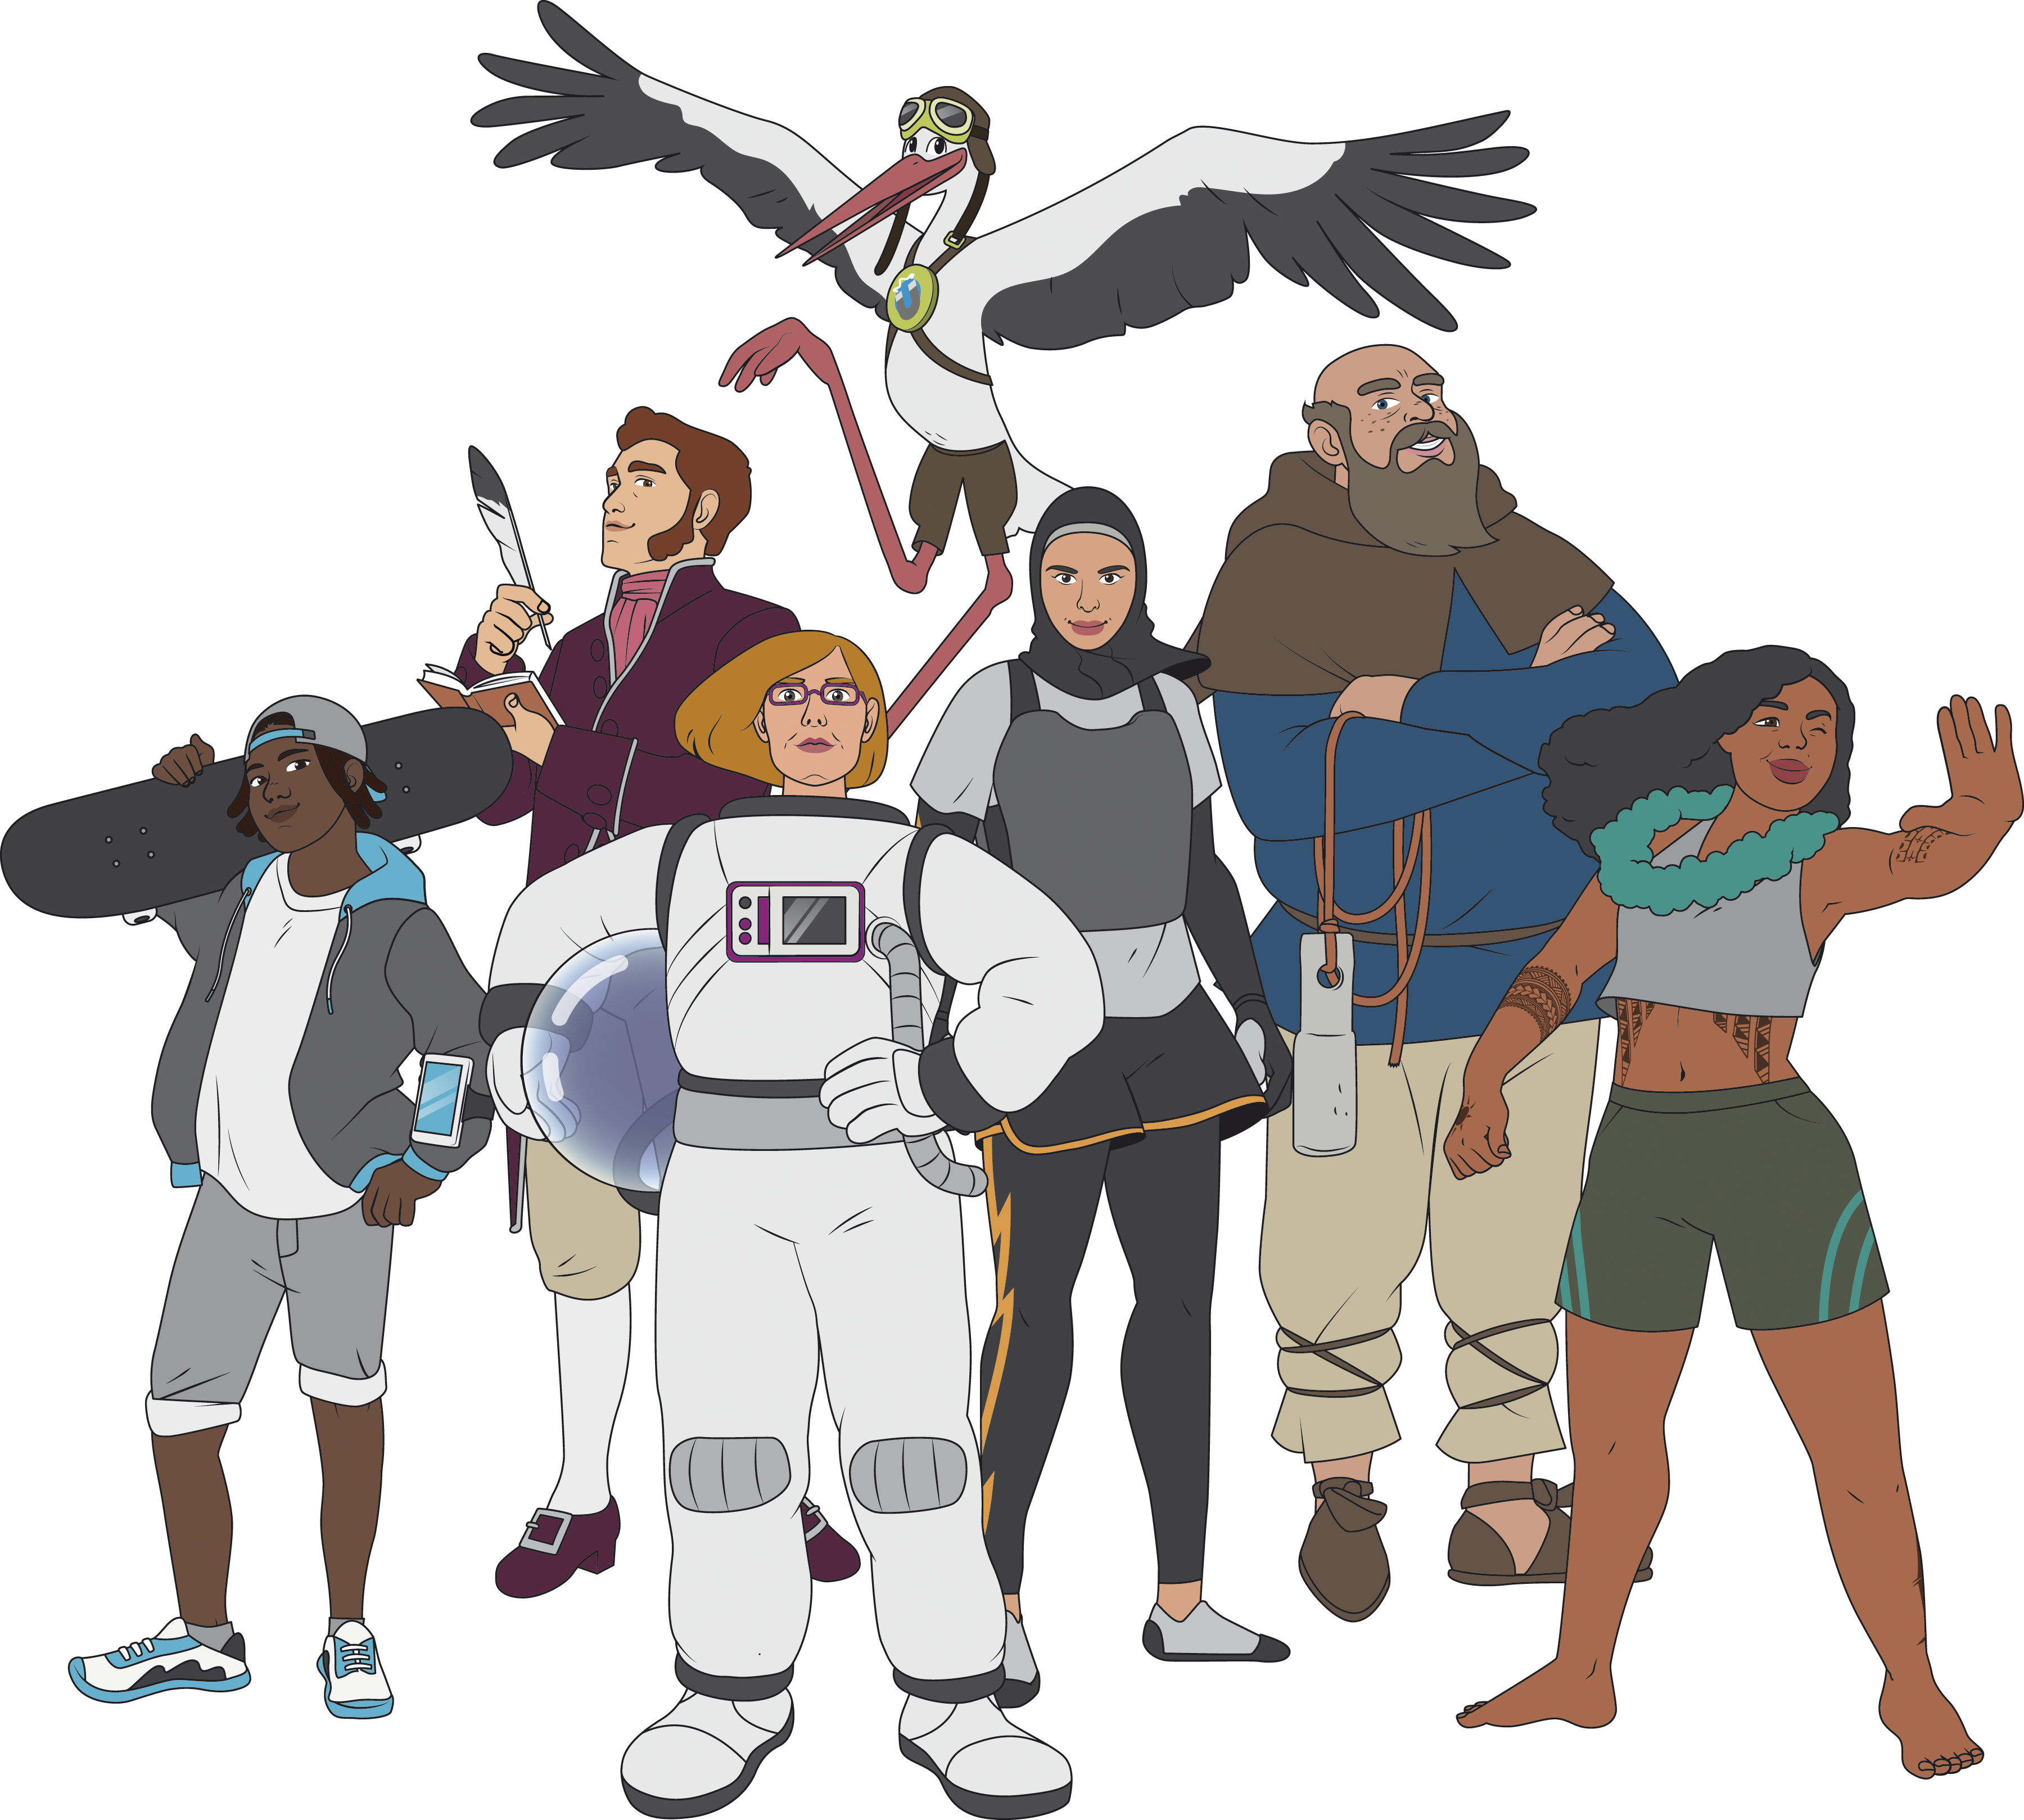 Sieben Comic-Figuren, die verschiedene Navigationsfähigkeiten haben.: Junge mit Skateboard, Mann mit Karte und Feder, Astronautin, Storch, Weltumseglerin, Kapitän und Naturkennerin.